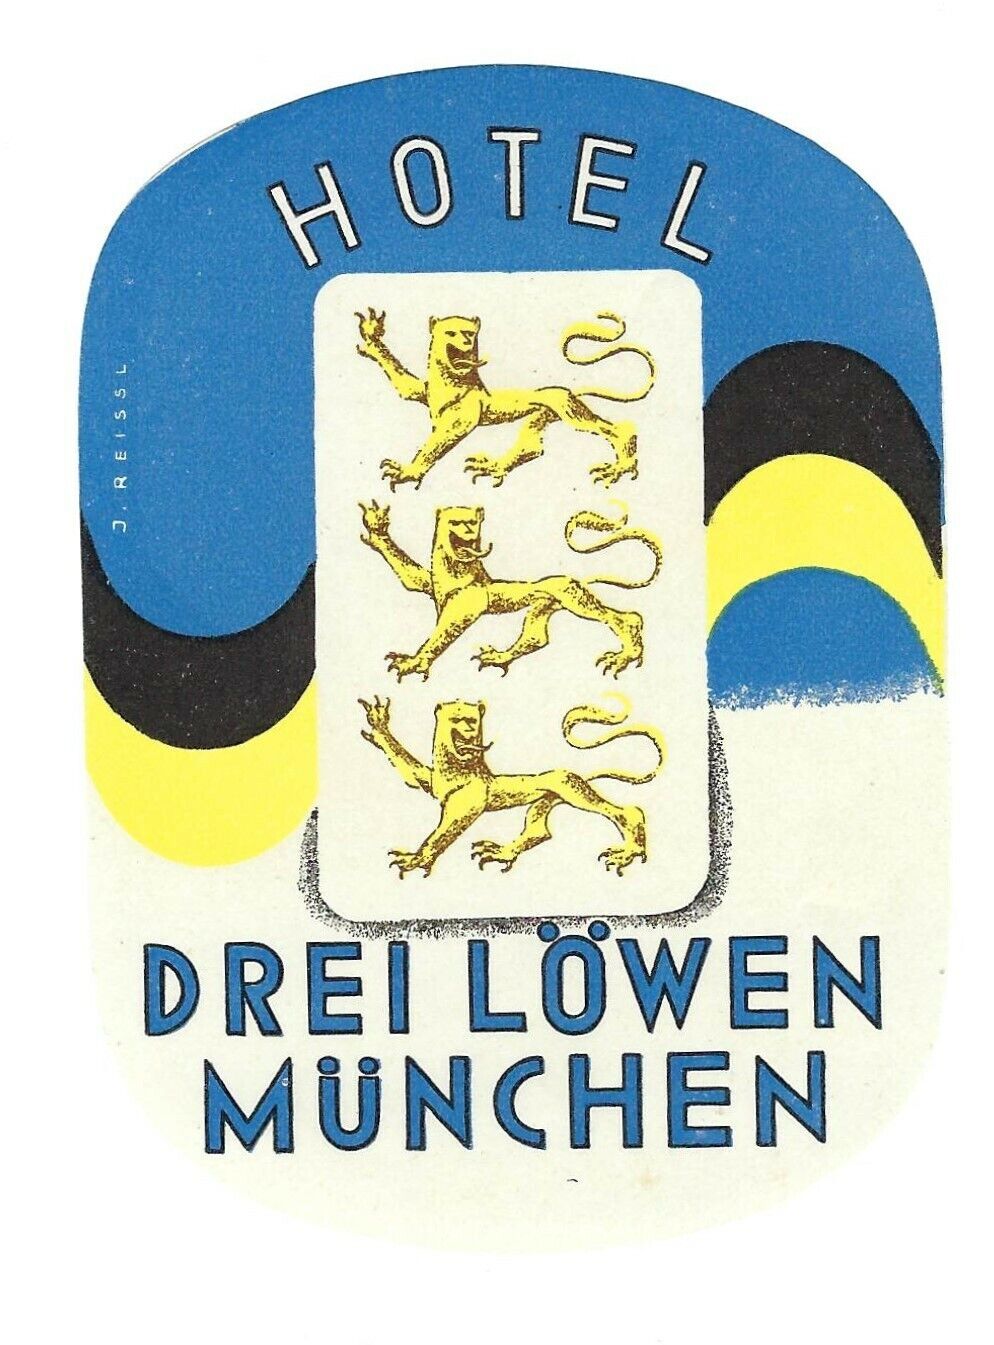 Munich Germany Hotel Drei Lowen Munchen Vintage Hotel Luggage Label